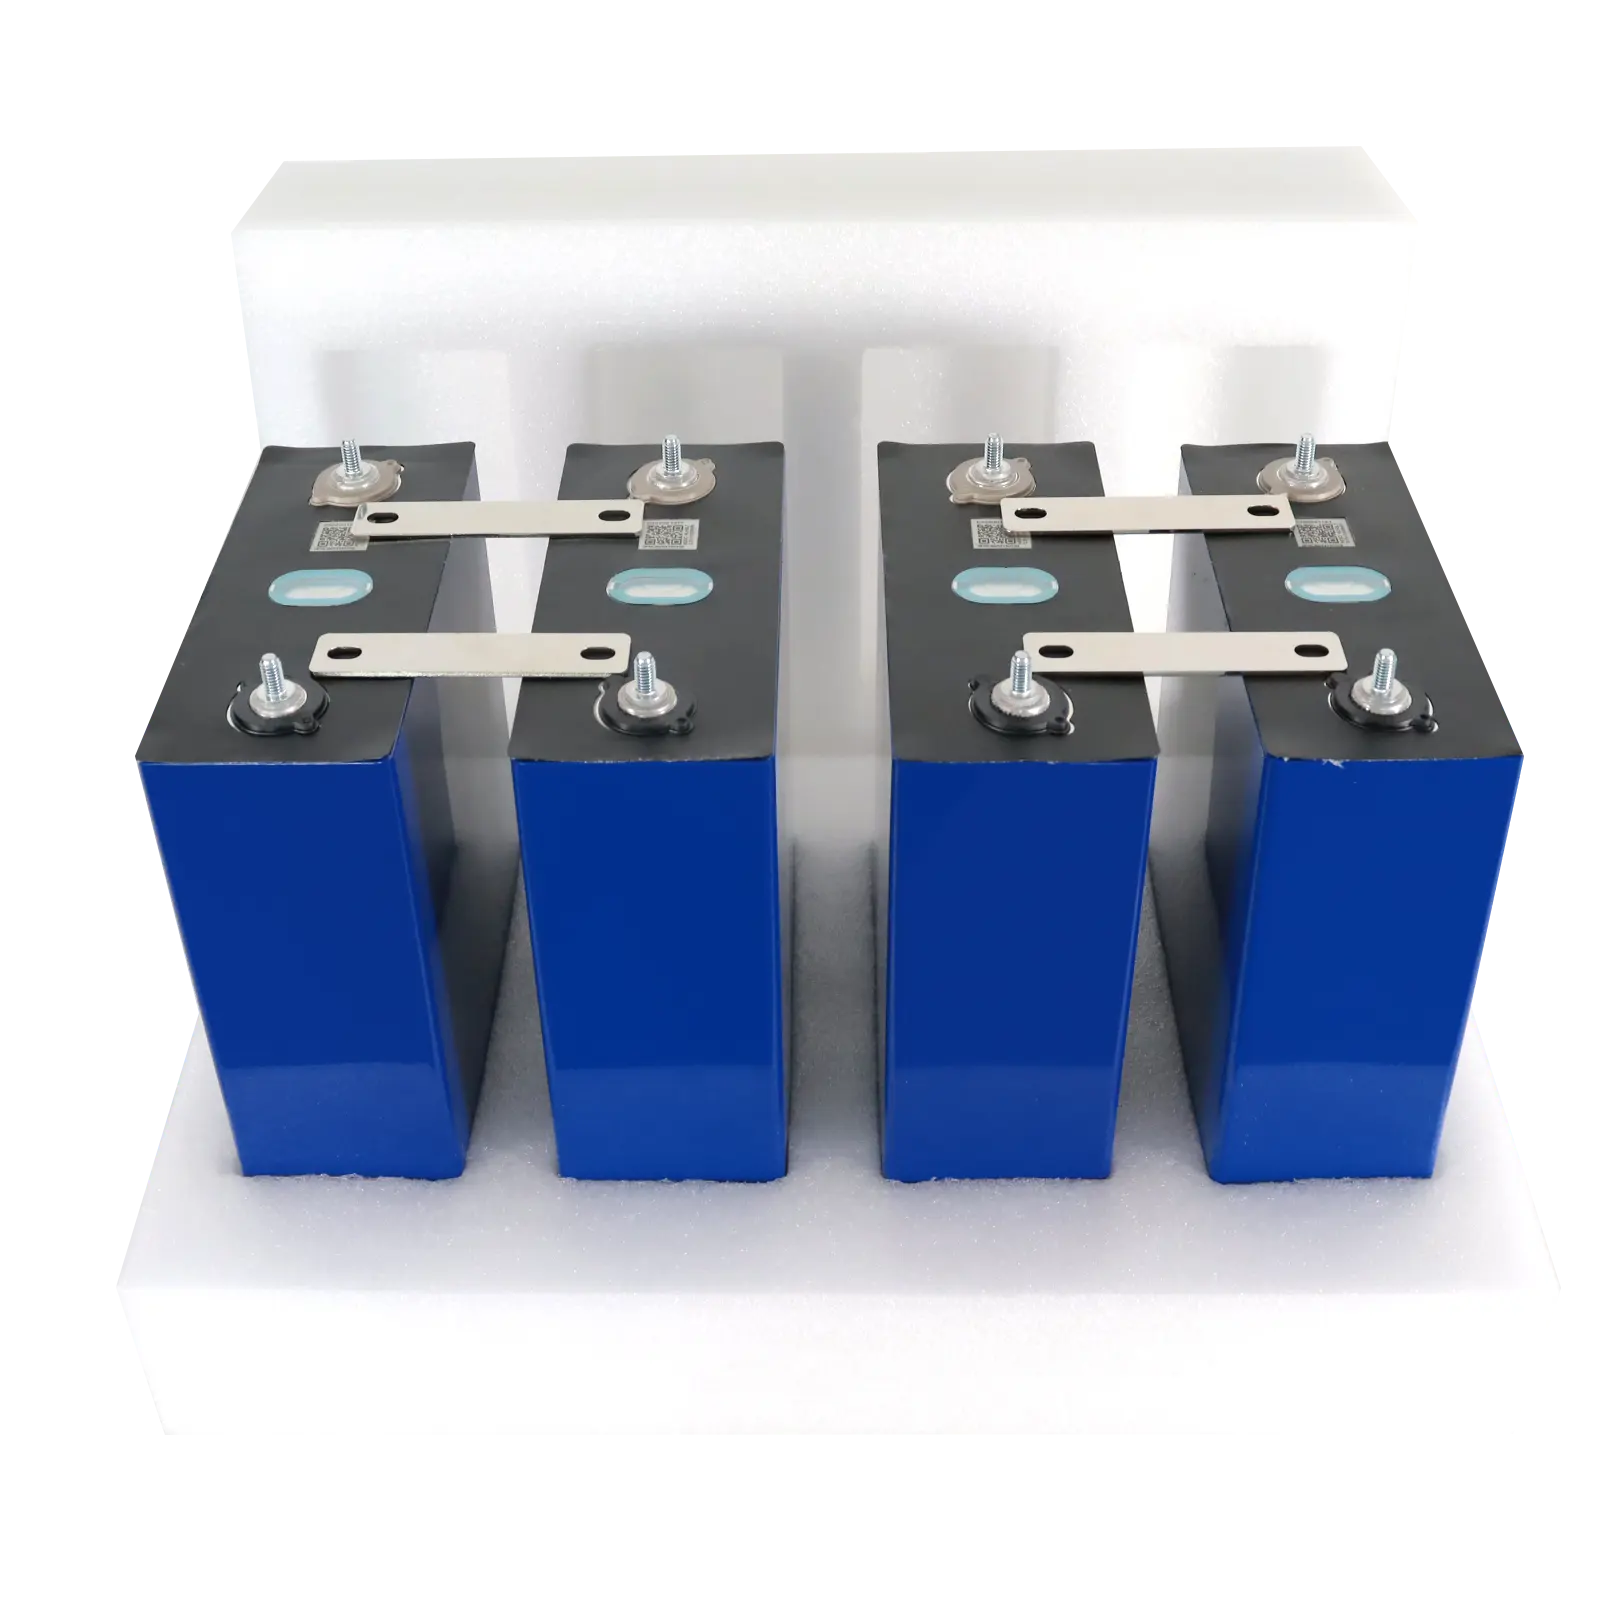 Ab stok Lifepo4 pil lityum hücre 3.2V 230ah 202ah enerji depolama sistemi için şarj edilebilir lityum iyon piller